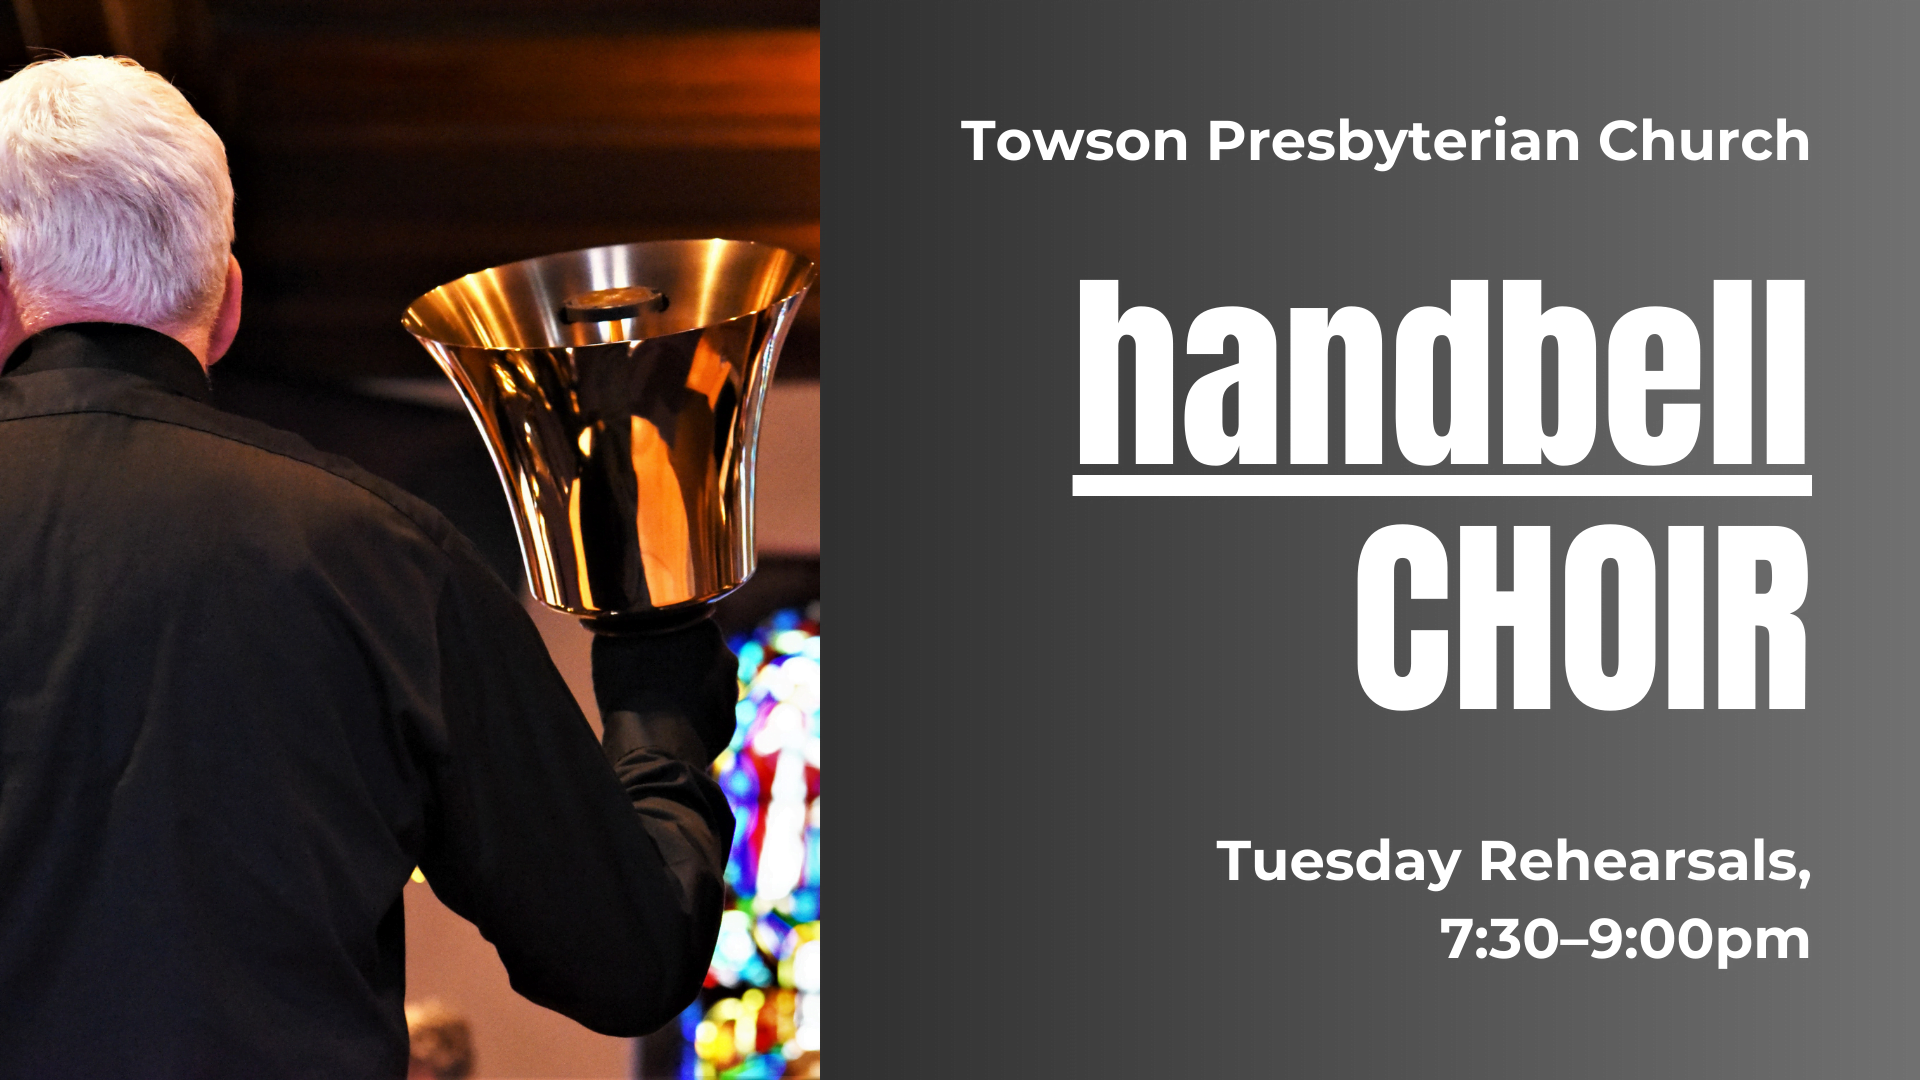 Graphic that says: "Towson Presbyterian Church. handbell Choir. Tuesday Rehearsals, 7:30-9:00pm."